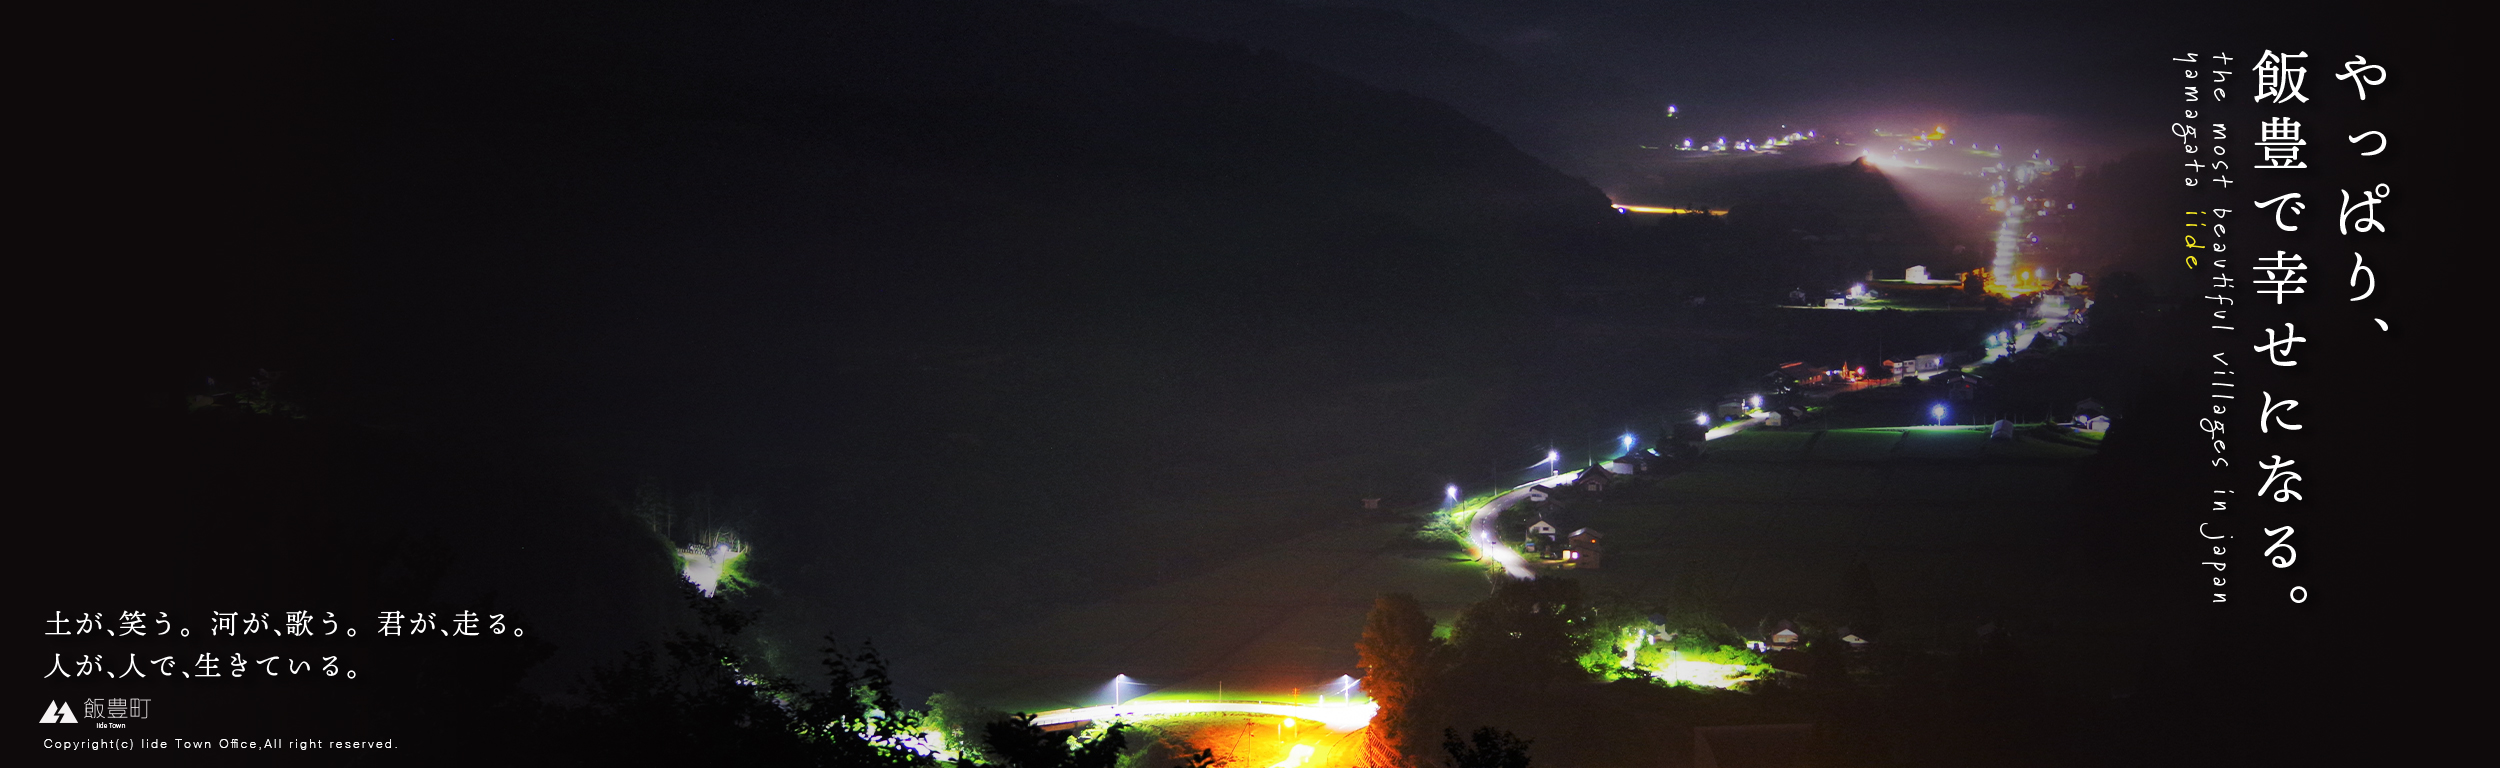 飯豊町夜景スライドバナー画像